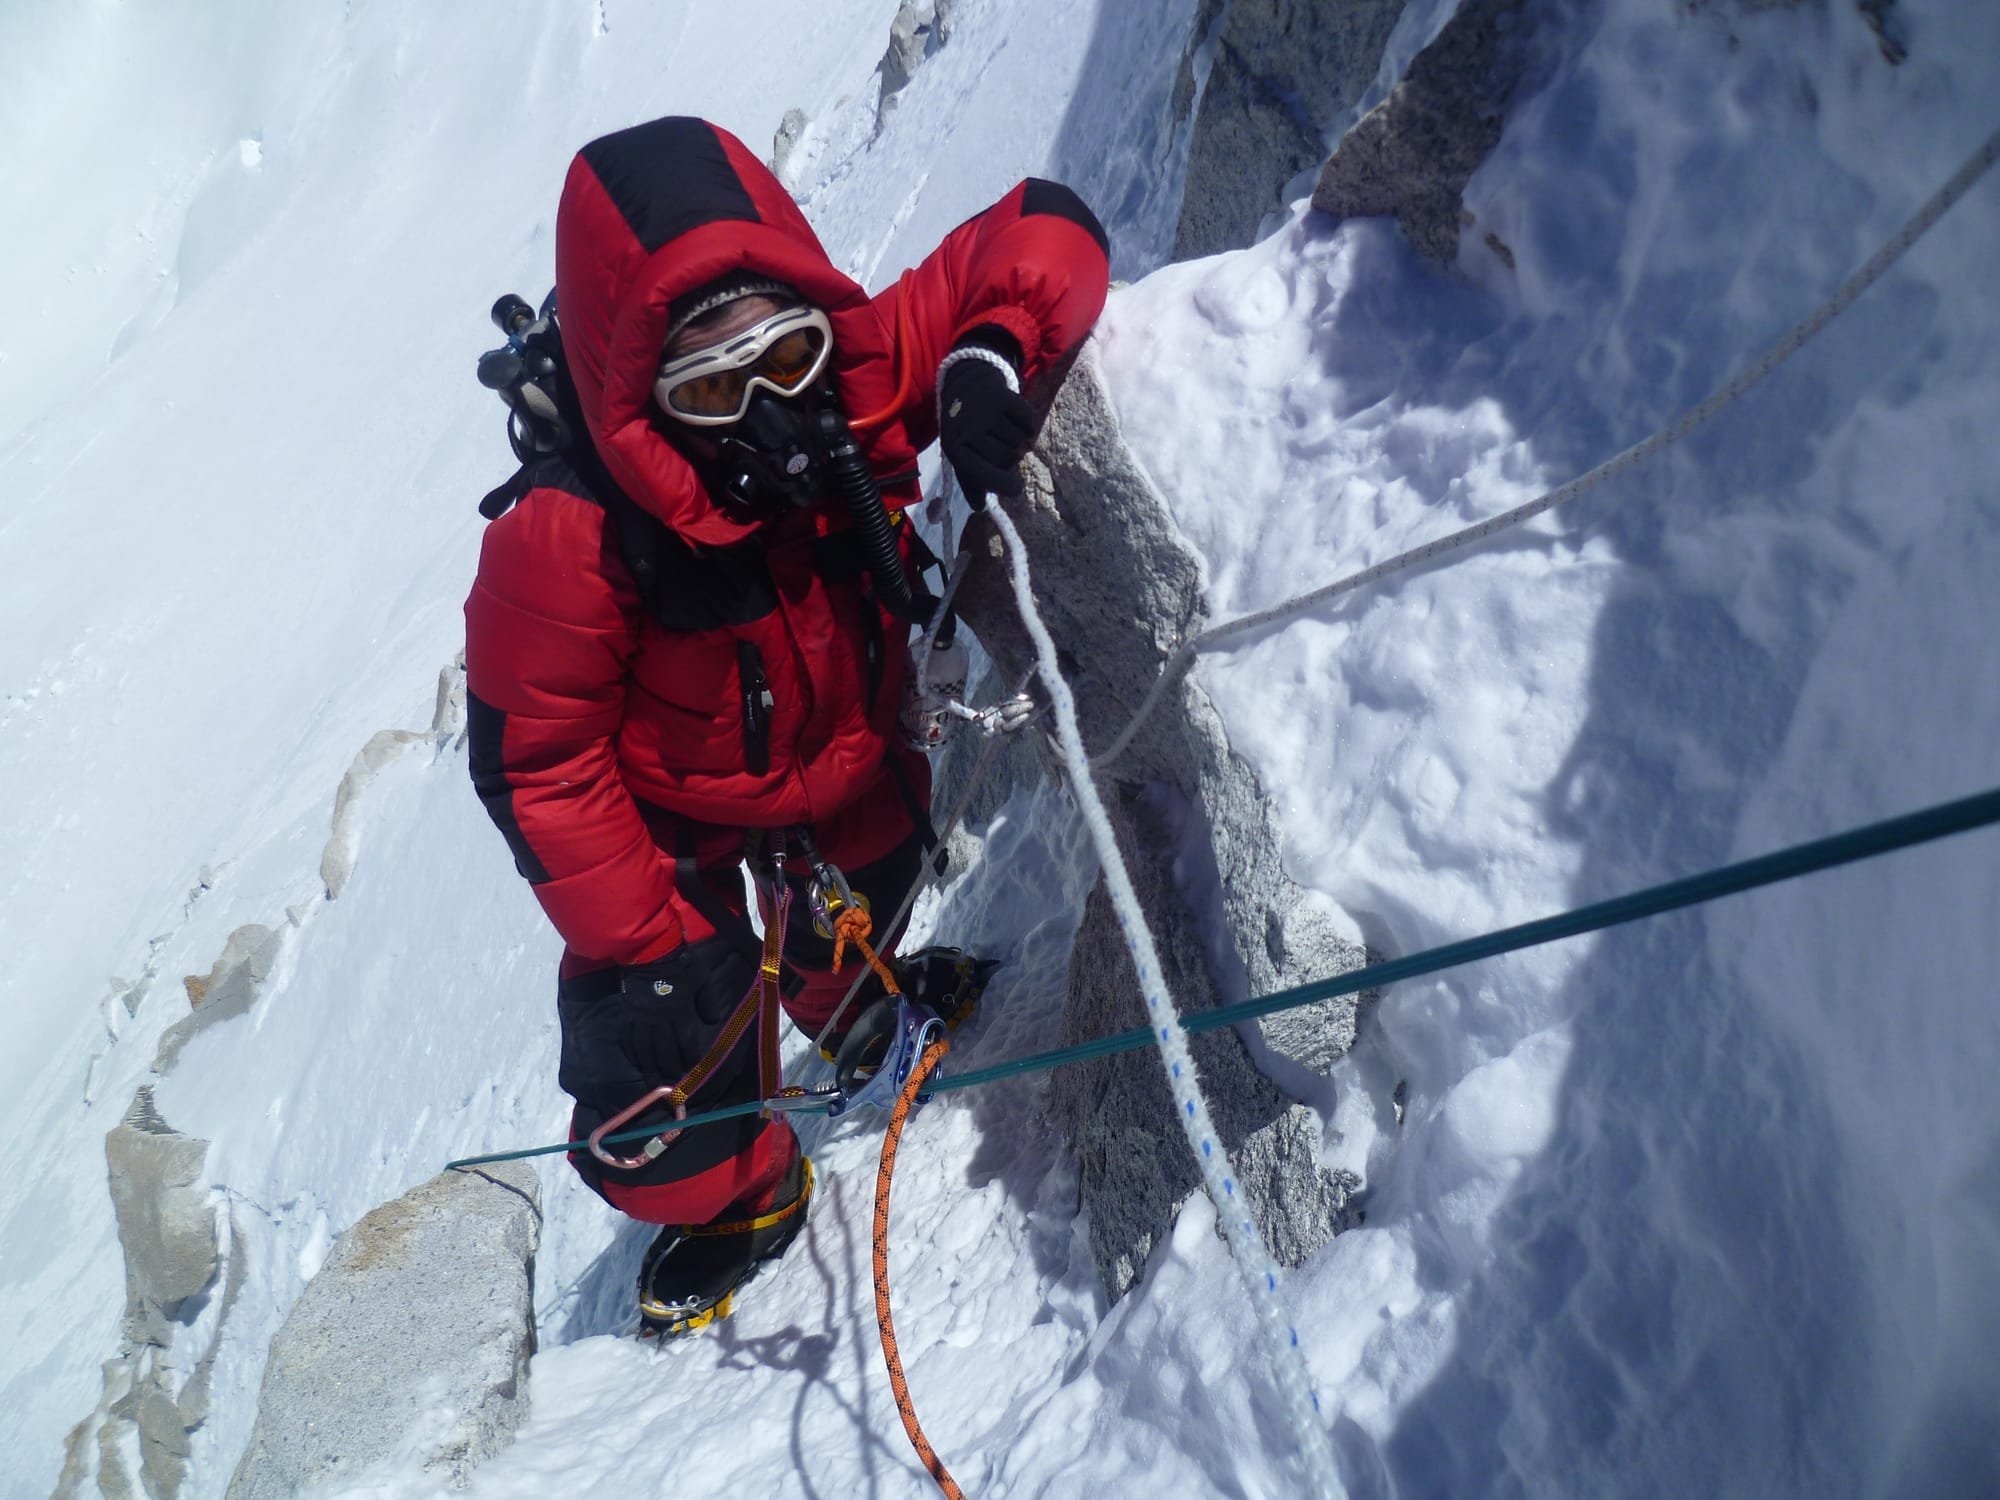 Makalu 8463 climbing expedition- 2011